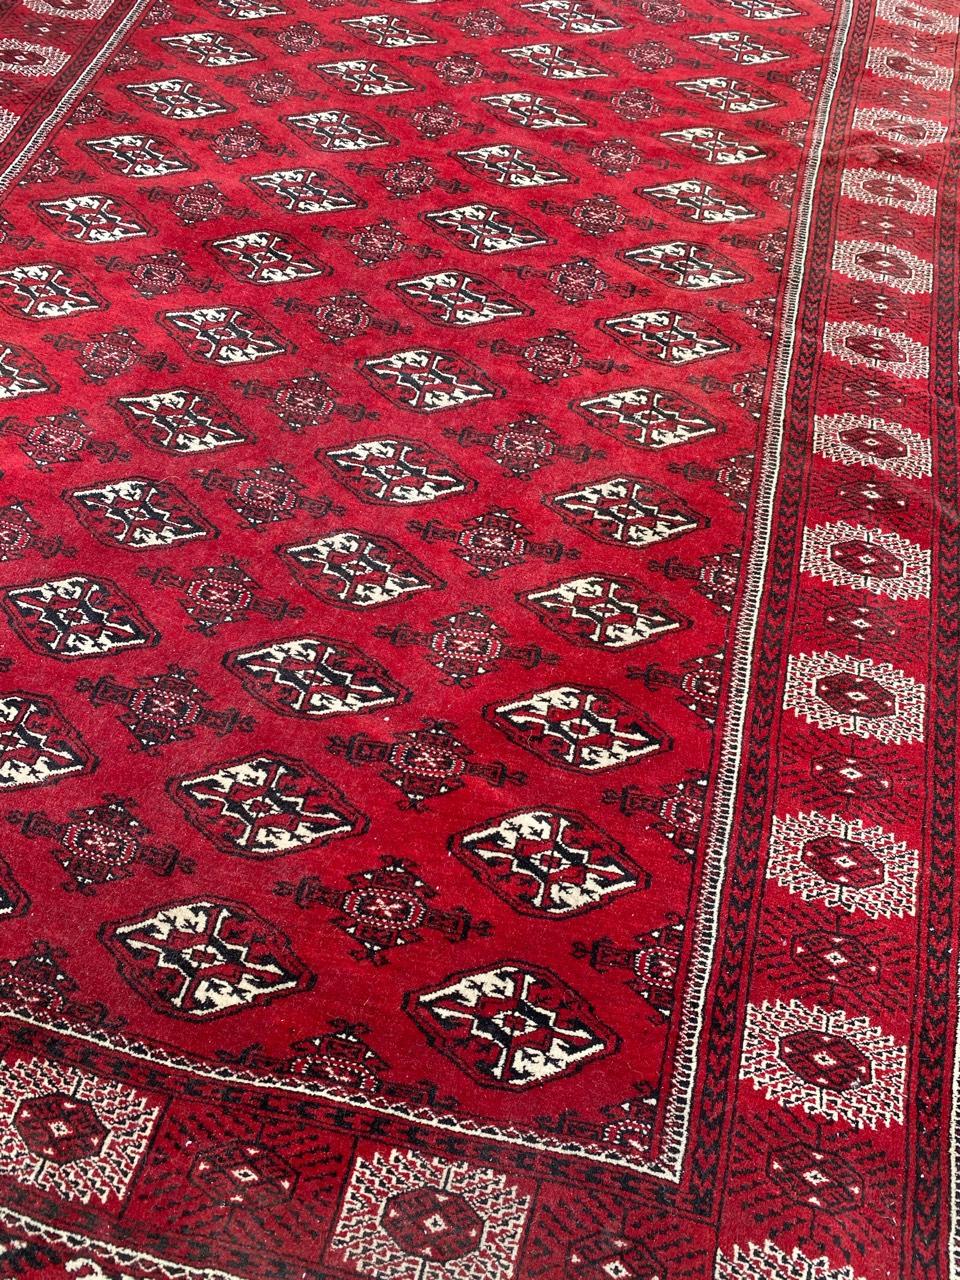 Schöner afghanischer Teppich aus der Mitte des Jahrhunderts mit schönem Bokhara-Muster und roter Feldfarbe mit Schwarz und Weiß, komplett handgeknüpft mit Wollsamt auf Wollfond.

✨✨✨
